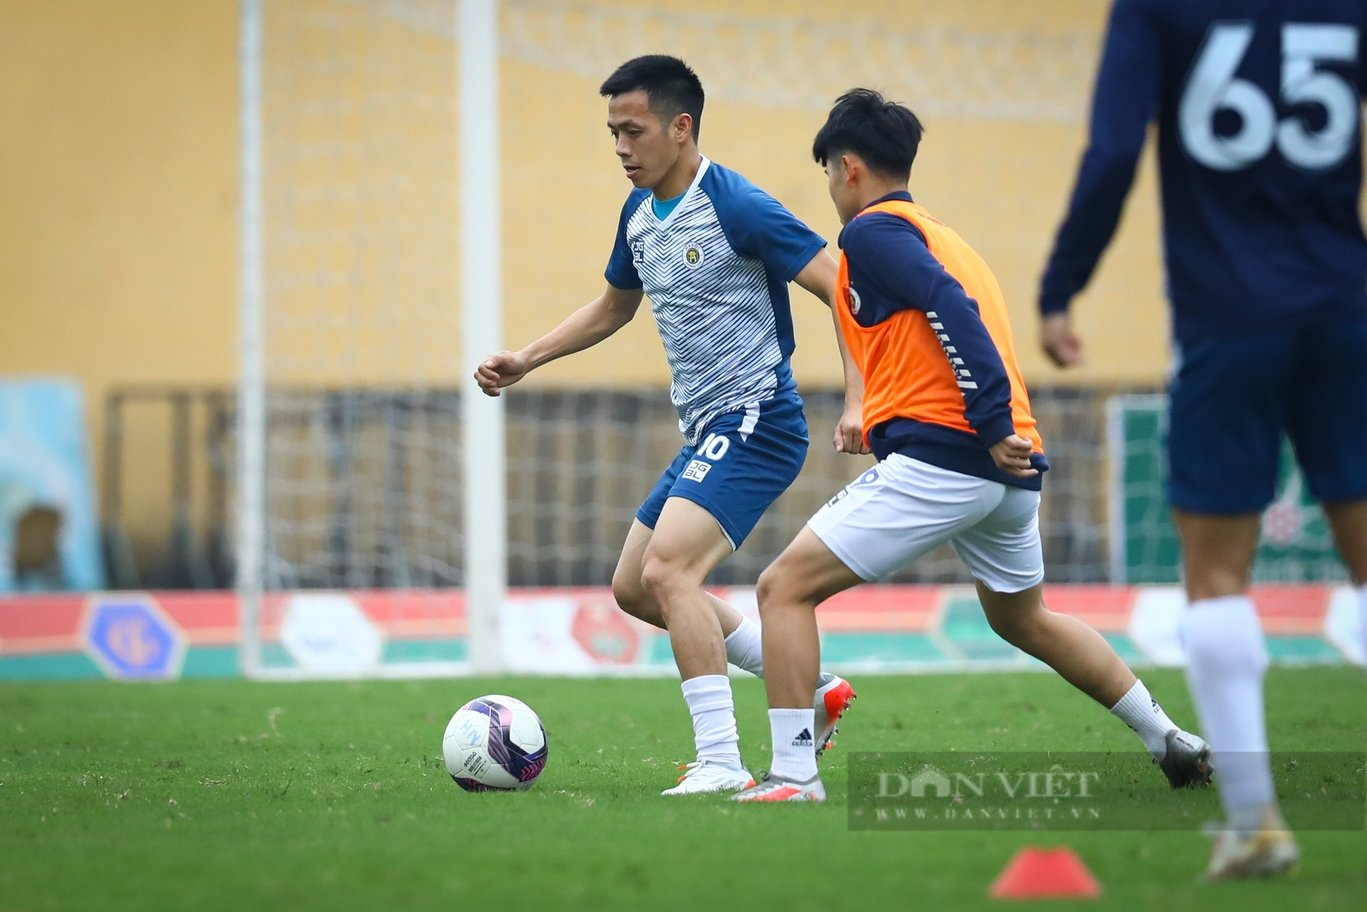 Ba tuyển thủ U23 Việt Nam ở CLB Hà Nội lên đá tại V.League - Ảnh 11.